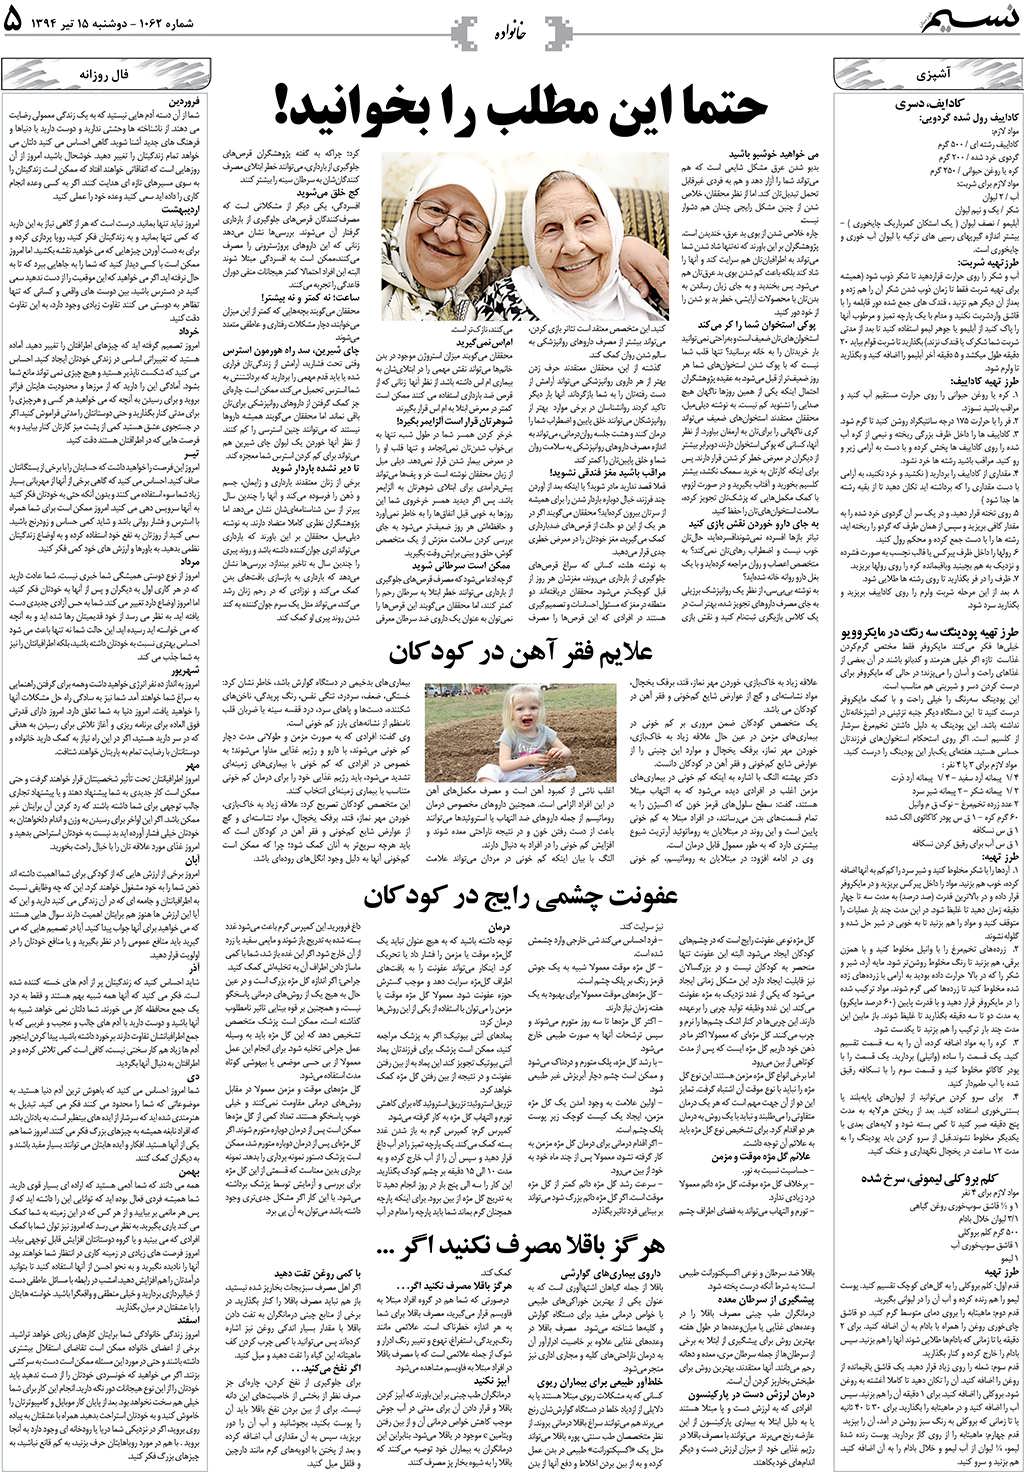 صفحه خانواده روزنامه نسیم شماره 1062